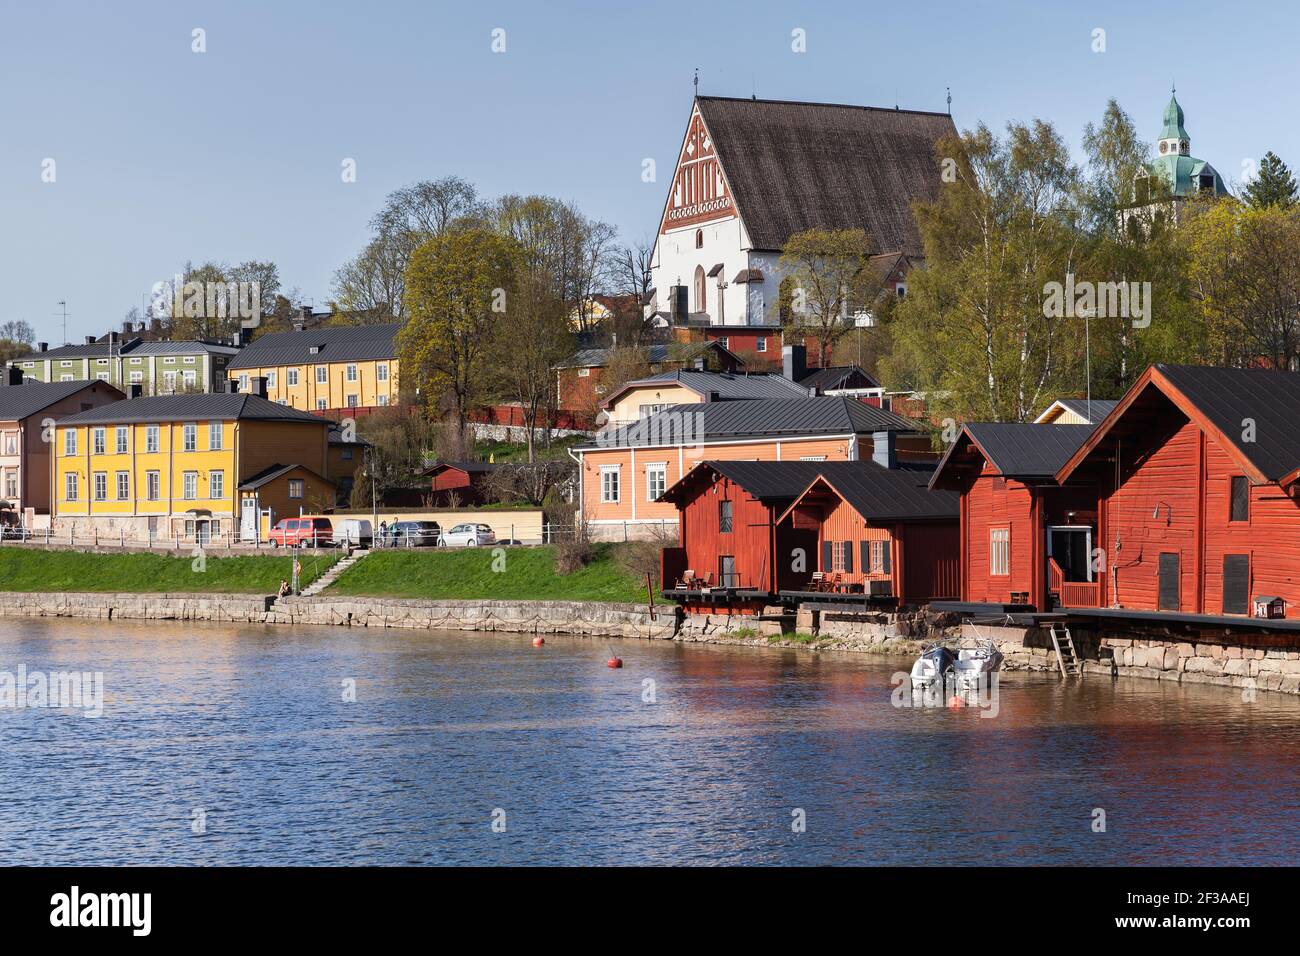 Porvoo, Finnland - 7. Mai 2016: Altstadt von Porvoo, Finnland. Sommerlandschaft mit roten Holzhäusern an der Flussküste und der Kathedrale von Porvoo auf einem Hintergrund Stockfoto